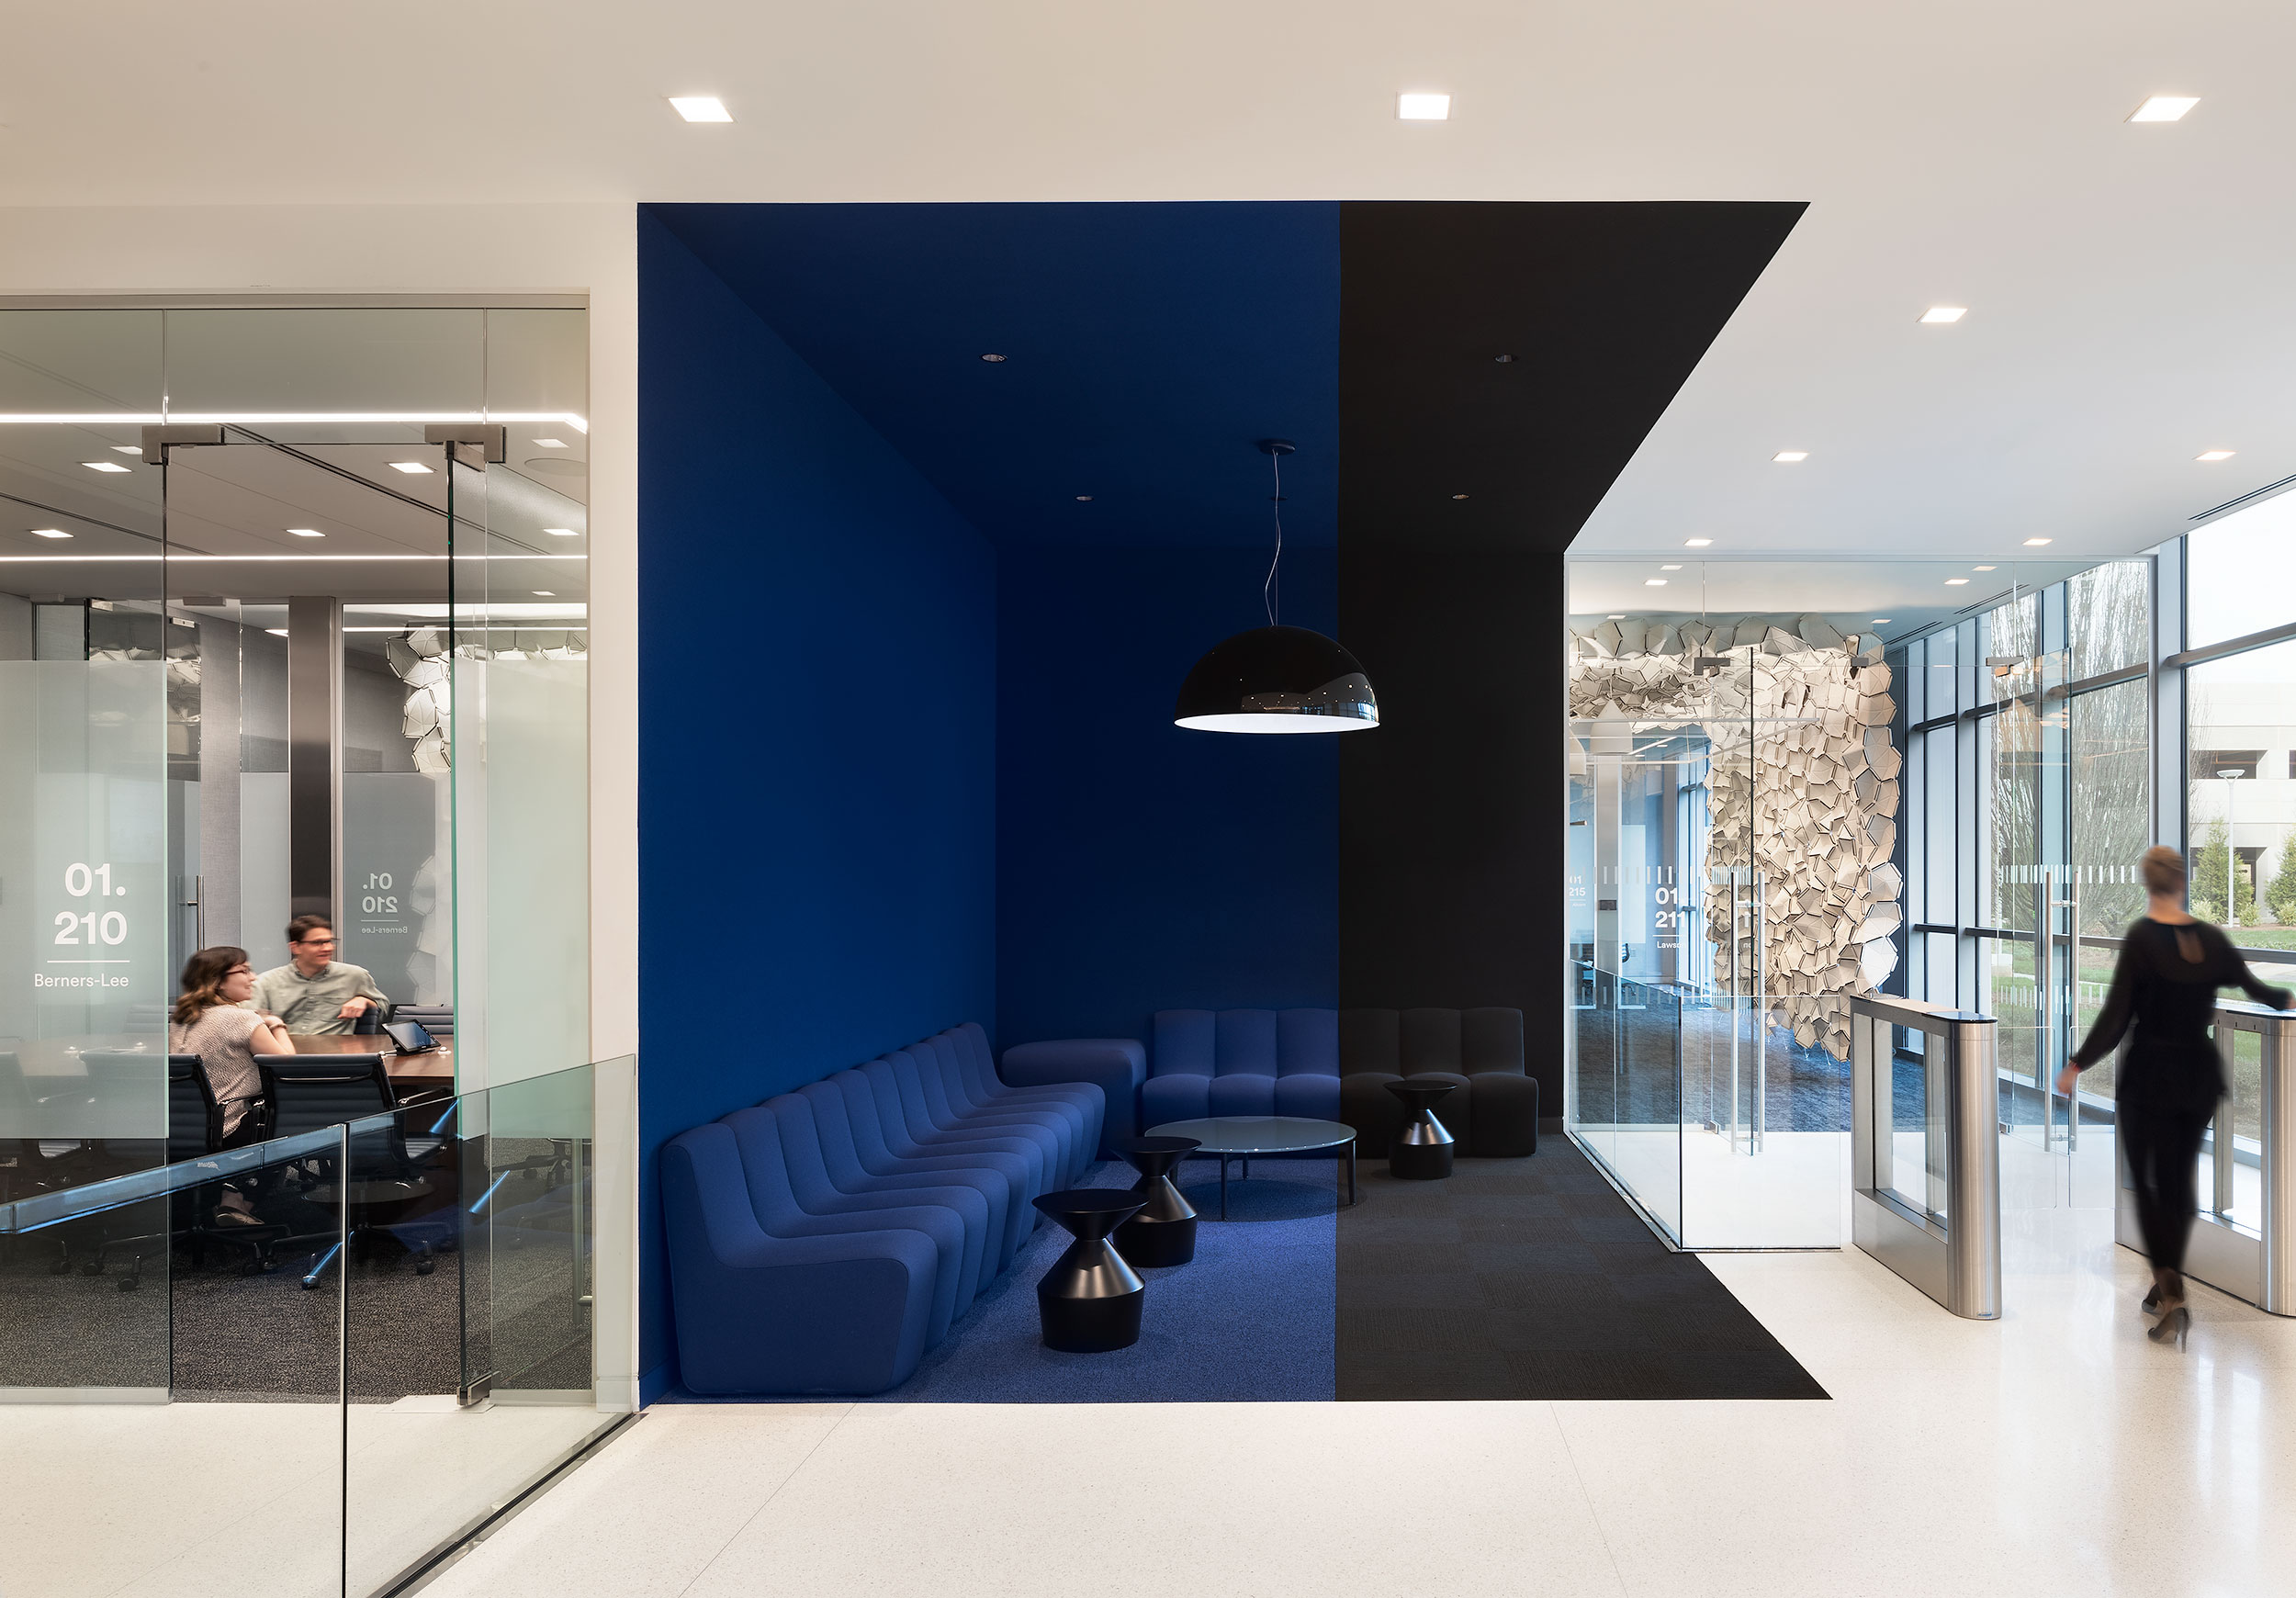 Corporate Interior Design